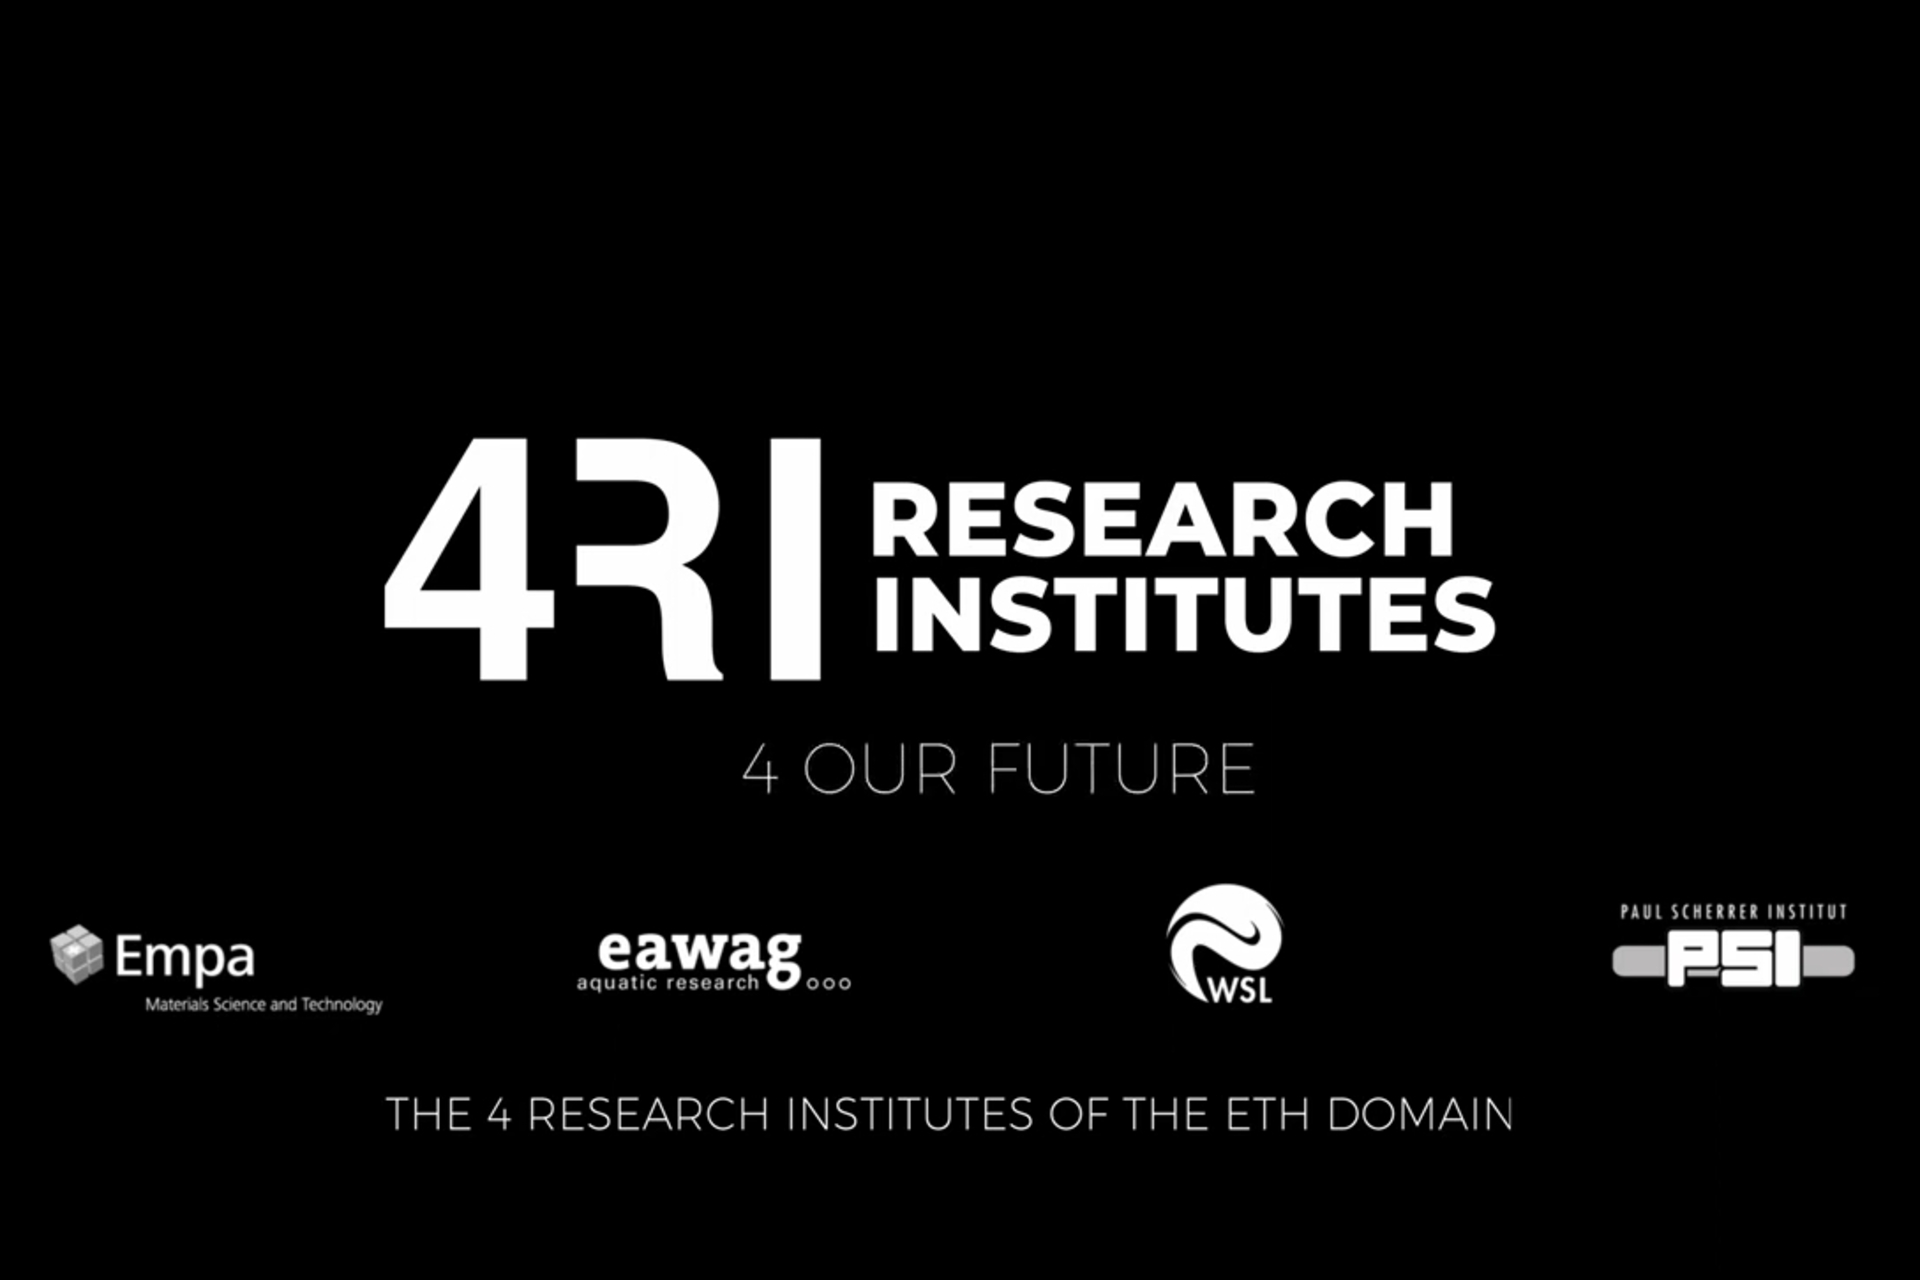 Pusat penelitian Swiss: EMPA, EAWAG, WSL dan PSI